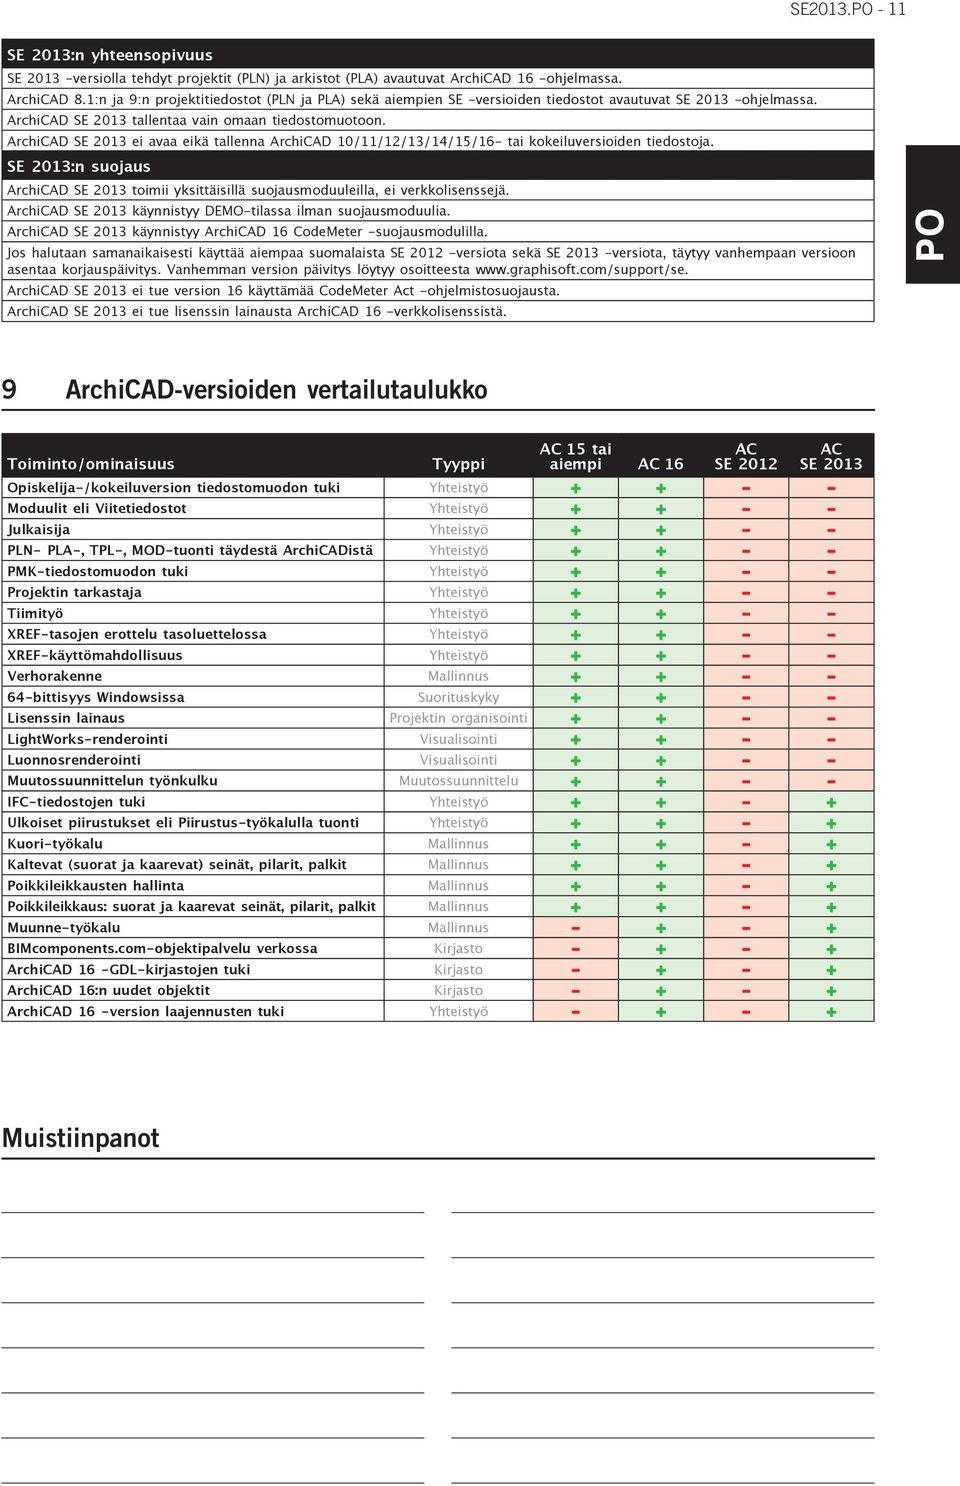 ArchiCAD SE 2013 ei avaa eikä tallenna ArchiCAD 10/11/12/13/14/15/16- tai kokeiluversioiden tiedostoja. SE 2013:n suojaus ArchiCAD SE 2013 toimii yksittäisillä suojausmoduuleilla, ei verkkolisenssejä.